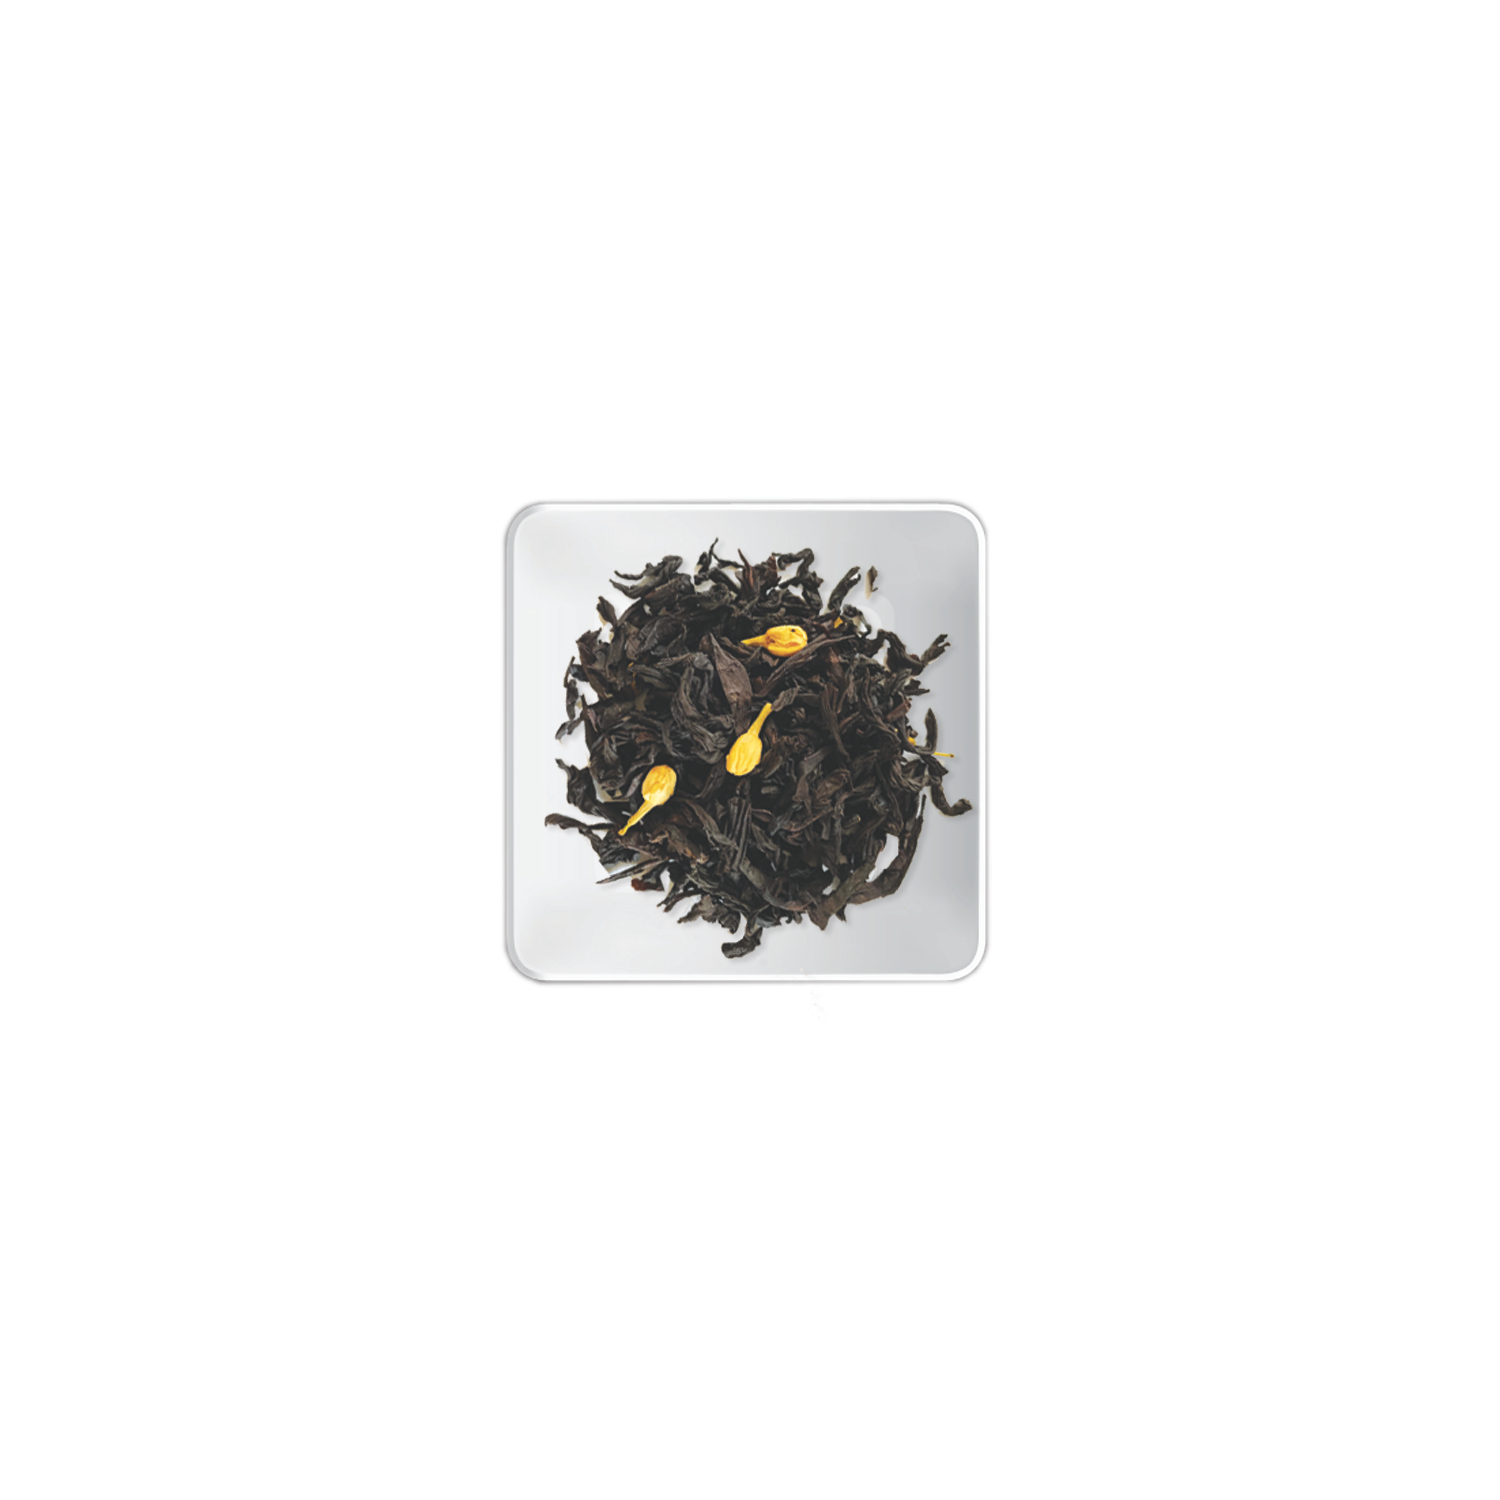 jázmin virág ízesítésű fekete tea